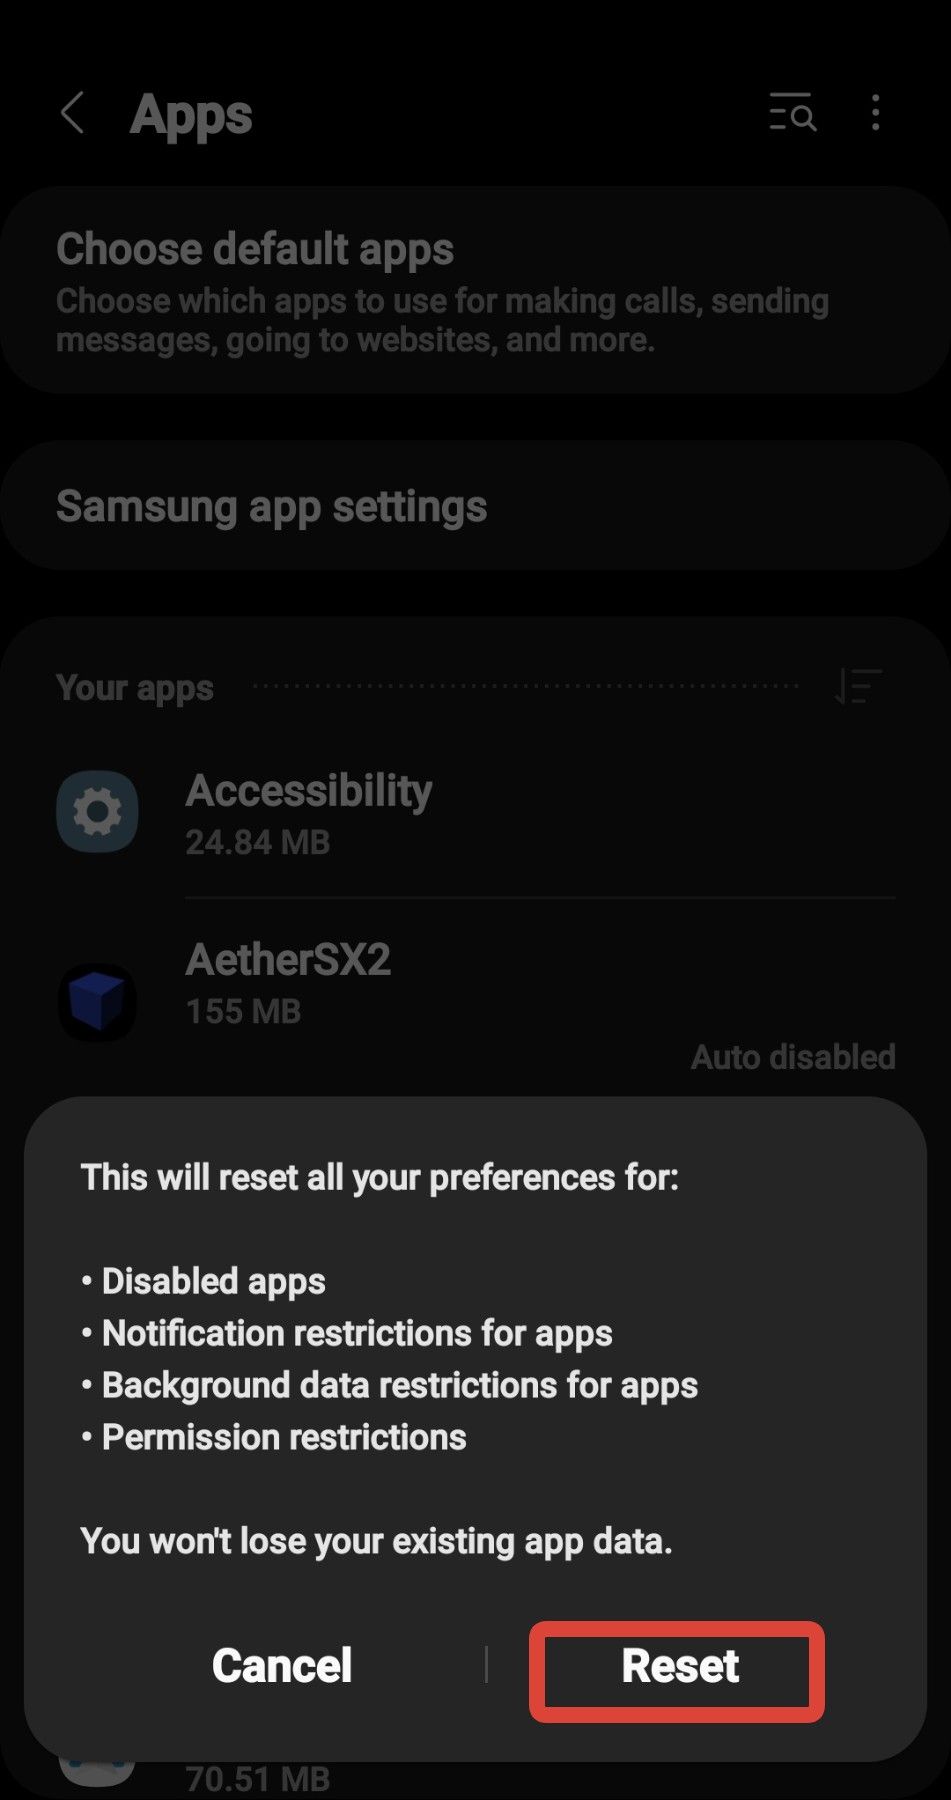 Uma captura de tela do prompt de redefinição do aplicativo Android Galaxy S 10 com destaque em vermelho